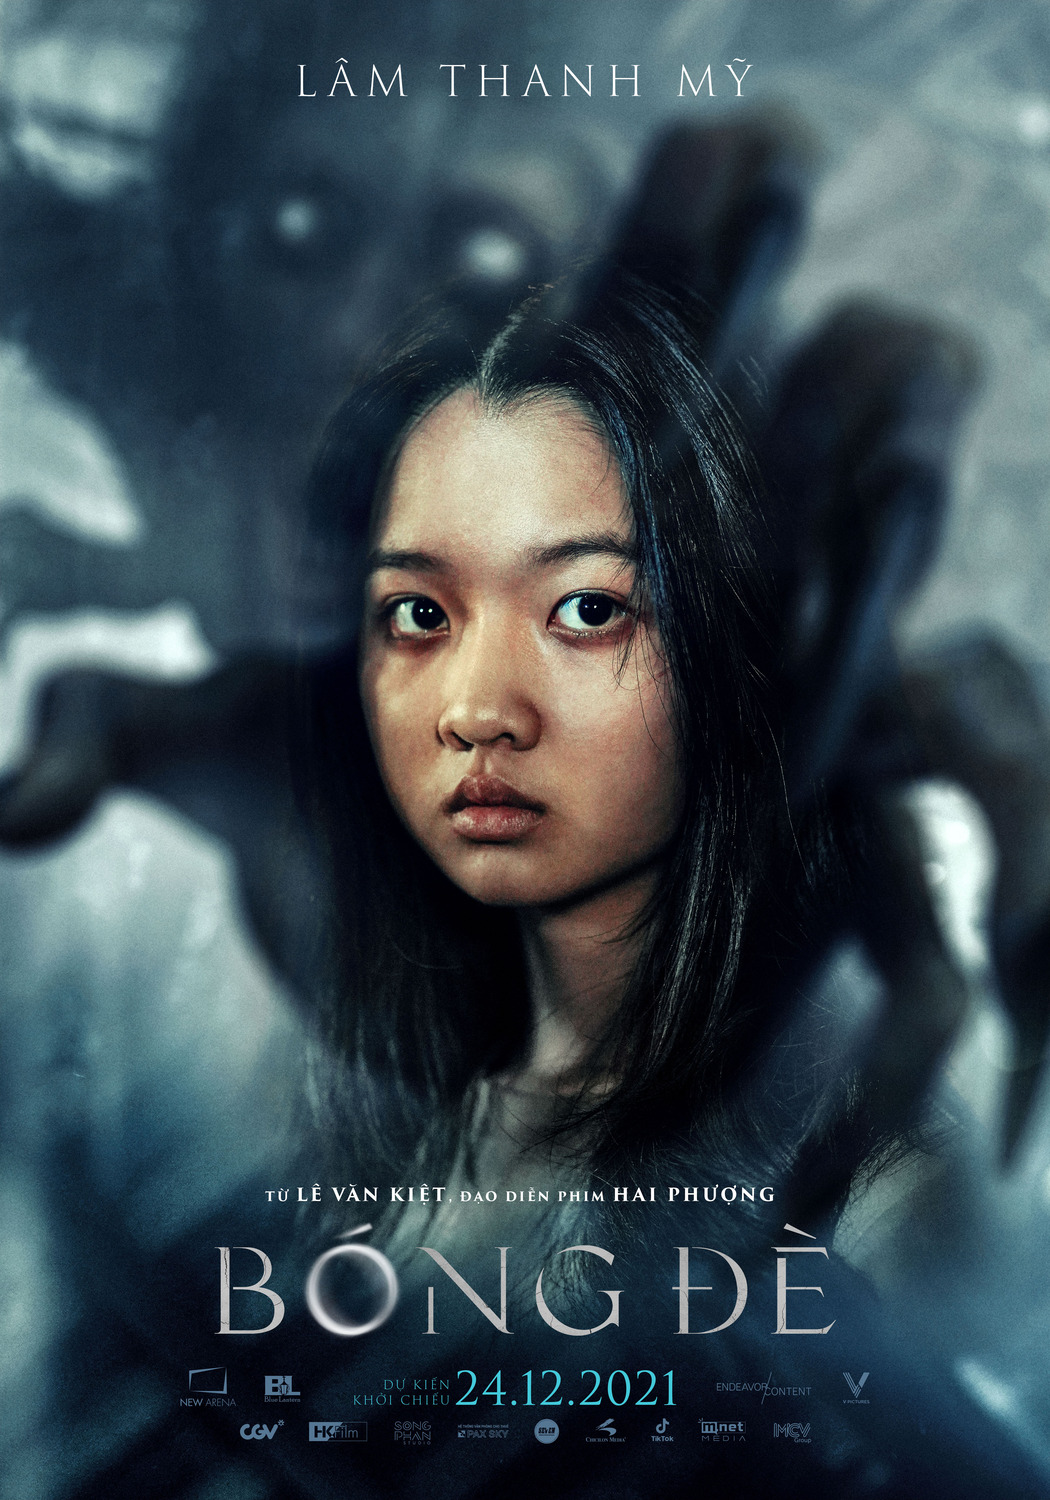 Extra Large Movie Poster Image for Bóng Ðè (#5 of 7)